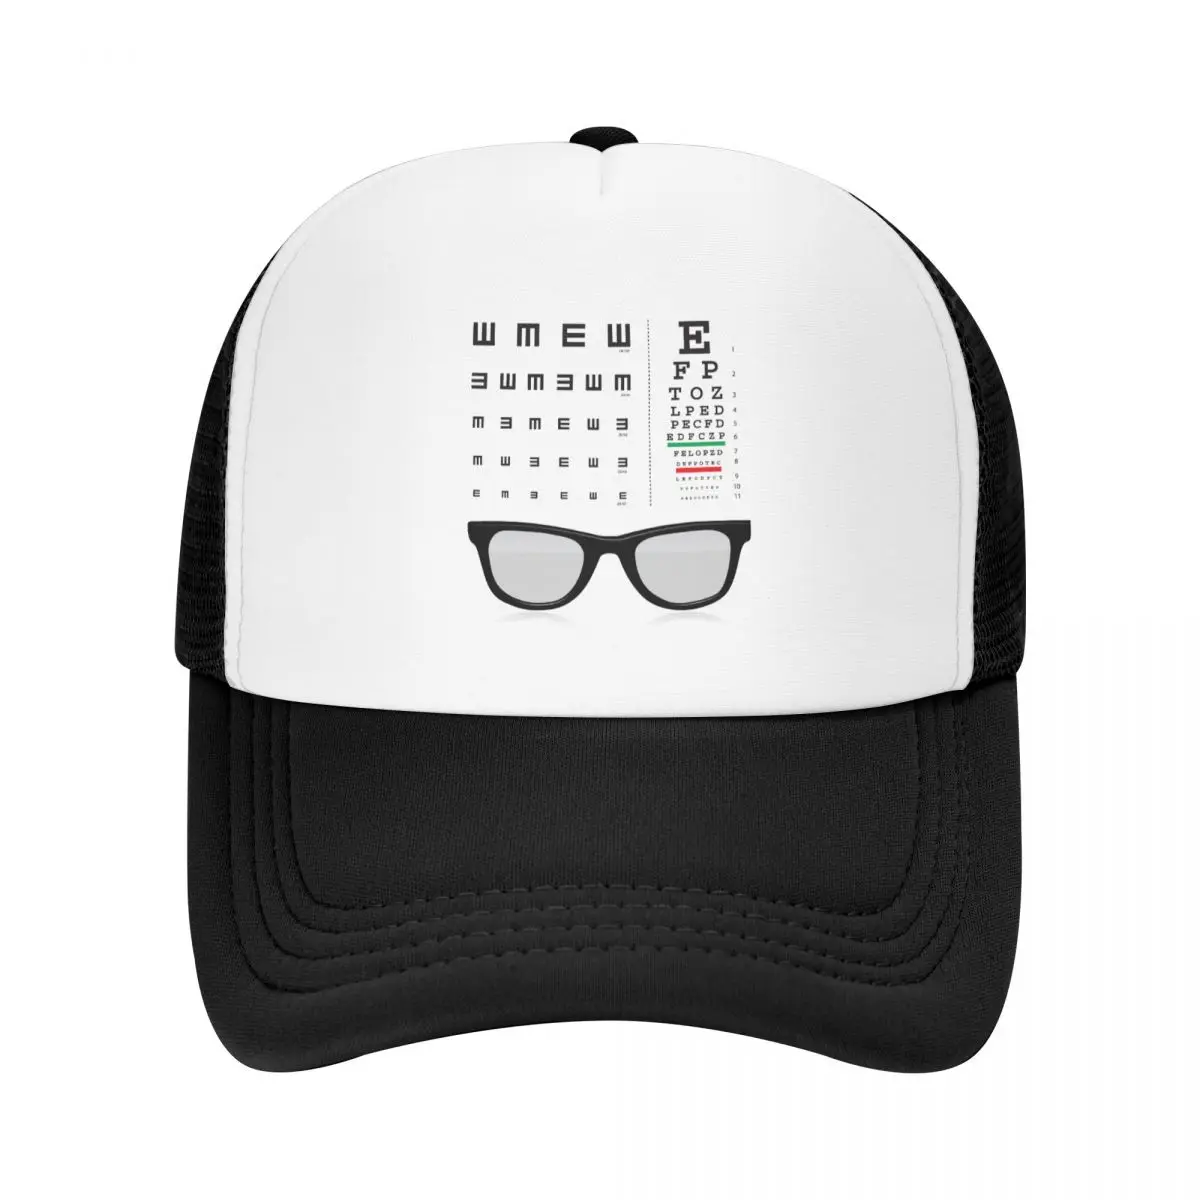 Изготовленная на заказ таблица проверки зрения Снеллена, бейсболка для мужчин и женщин, регулируемые очки для зрения, шляпа дальнобойщика, уличная одежда